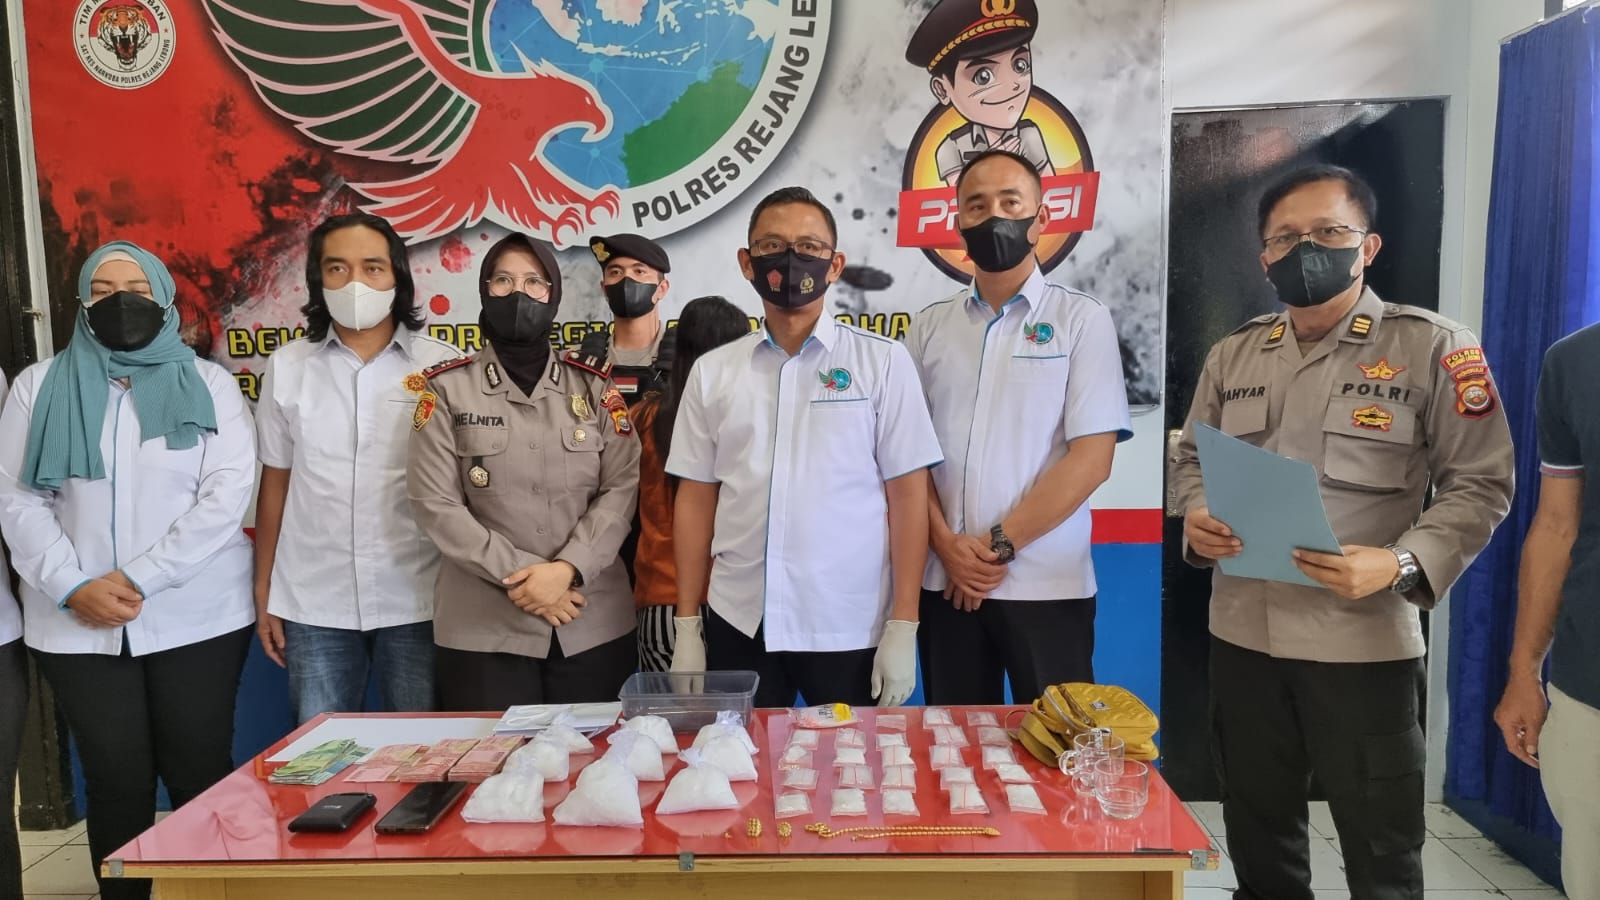 Release Ungkap Narkoba, Polres RL Apresiasi Bantuan Masyarakat